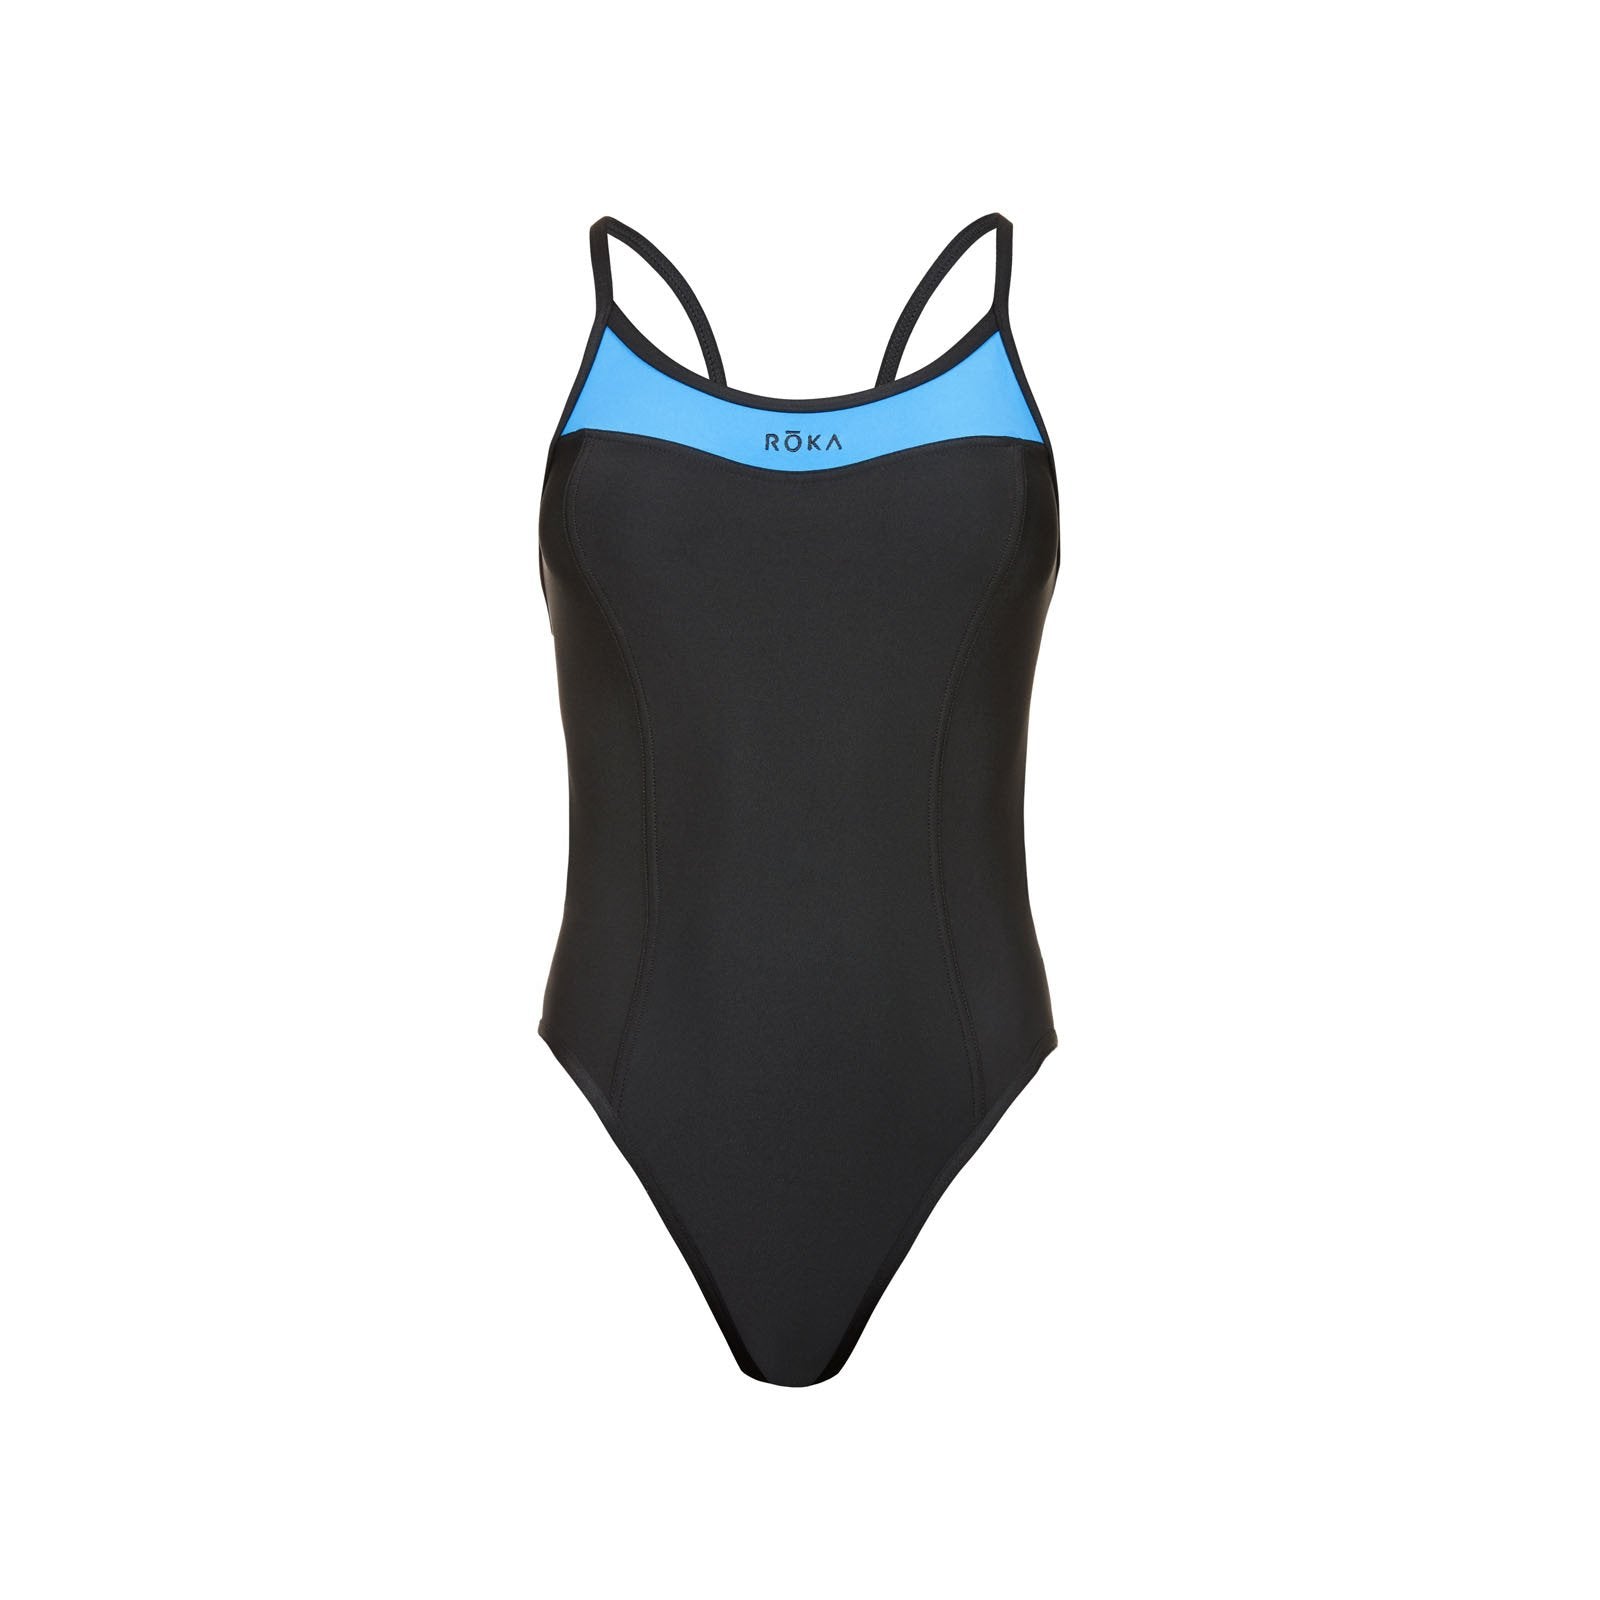 Roka Ironman Womens Size XL 2 Piece Black Swim Suit Bikini Black